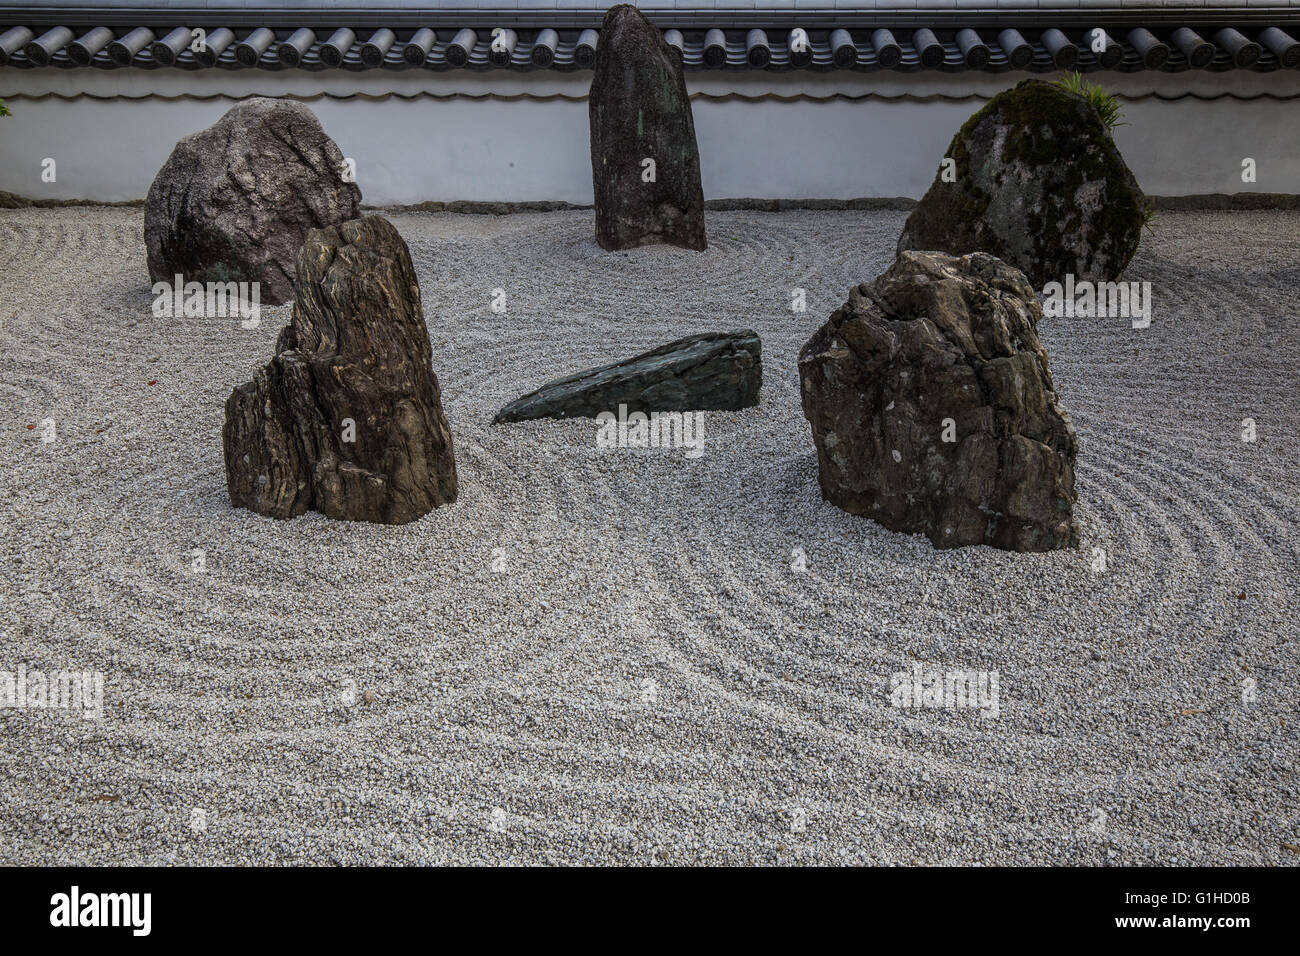 Komyozenji Garten besteht aus geharkt Kies und fünfzehn Steinen angeordnet, um die Kanji-Zeichen für Herz bilden Stockfoto